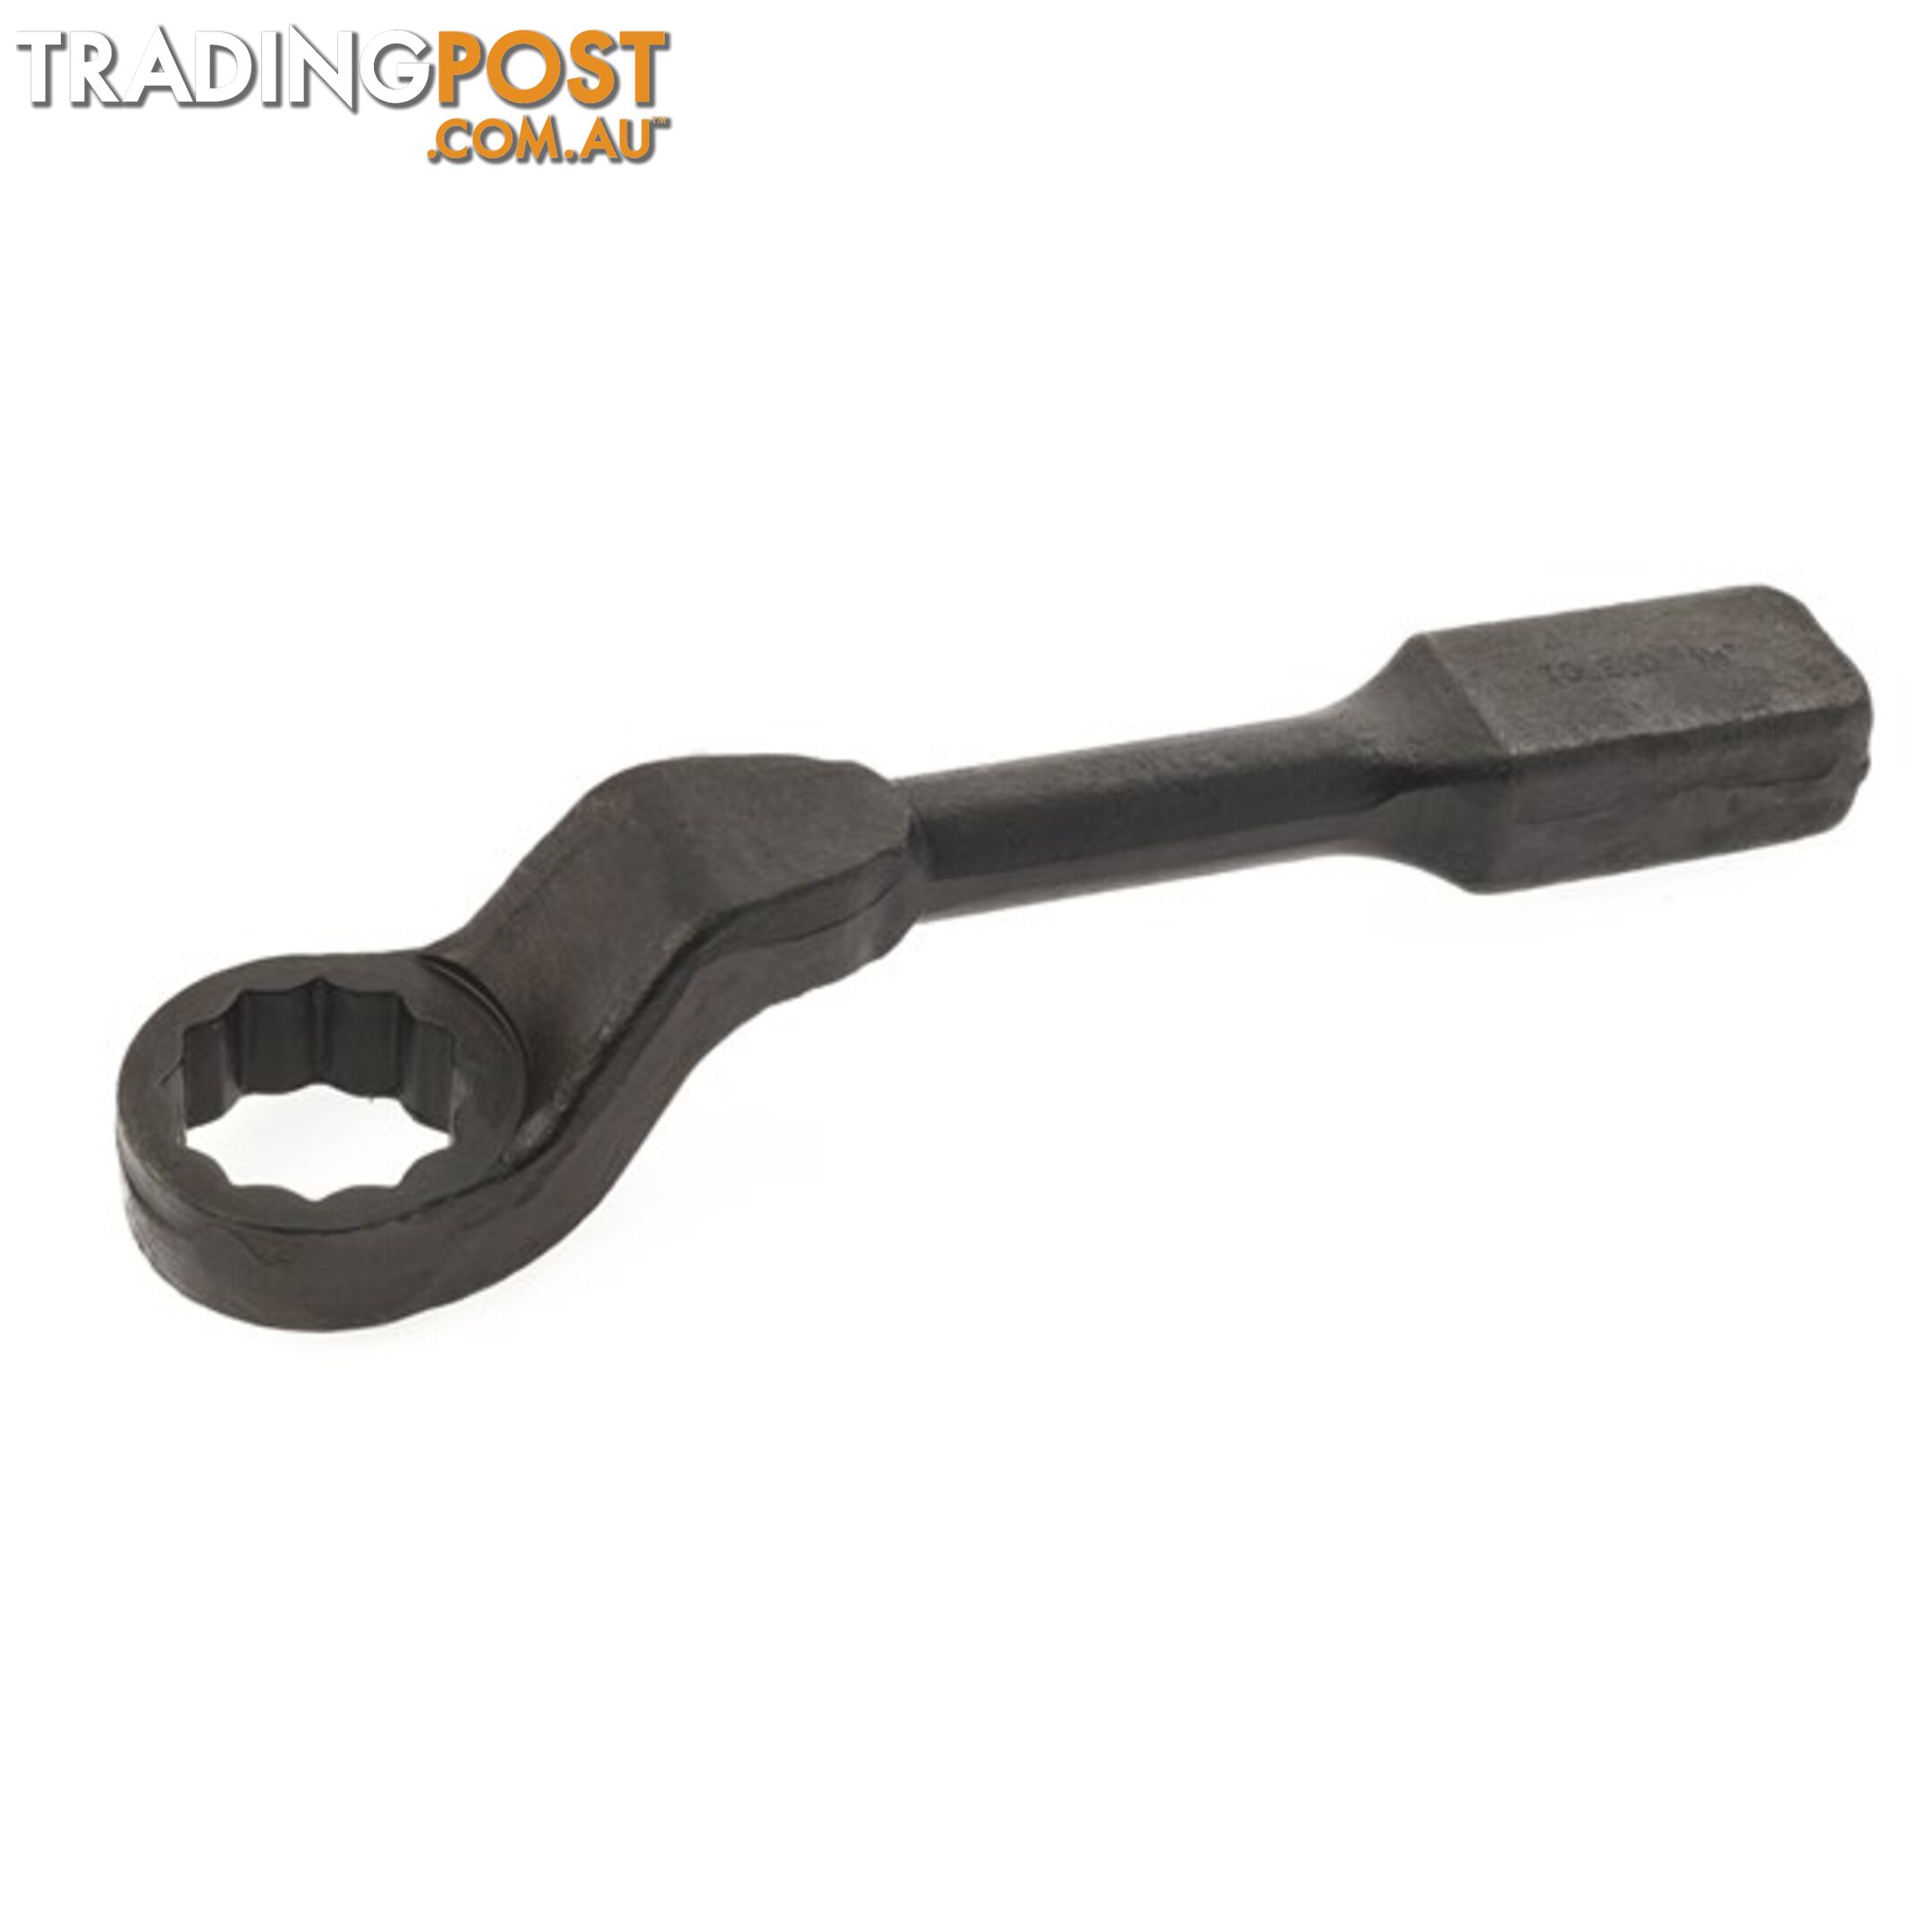 Offset / Cranked Slogging Wrench  - 1 9/16 " SKU - SWR1562C